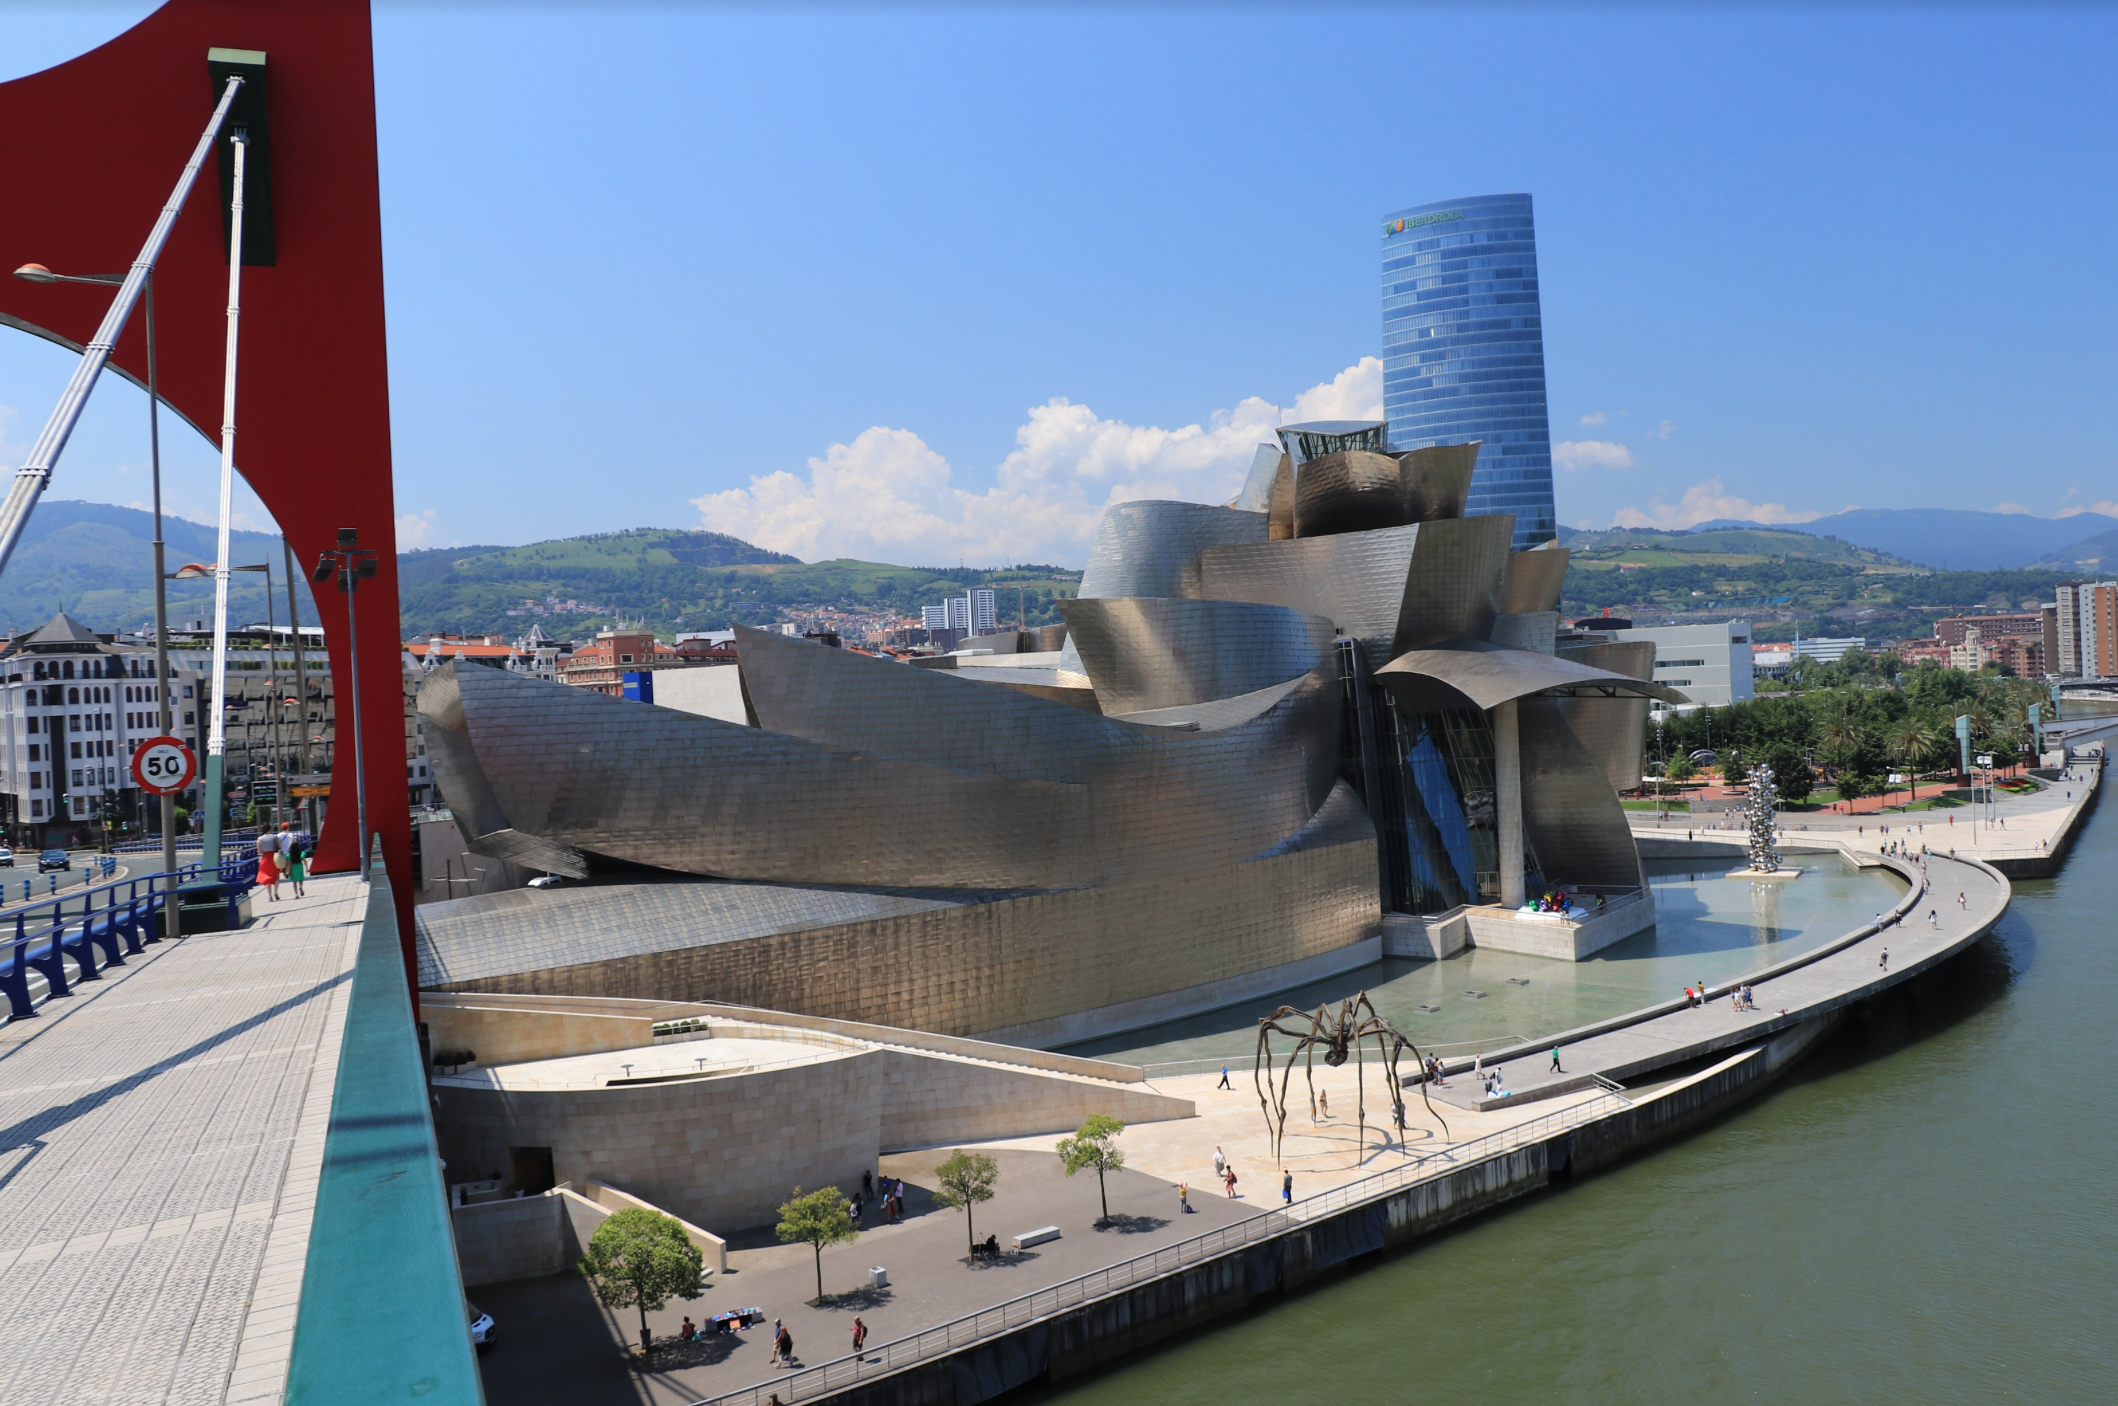 Bilbao Guggenheim view from the bridge